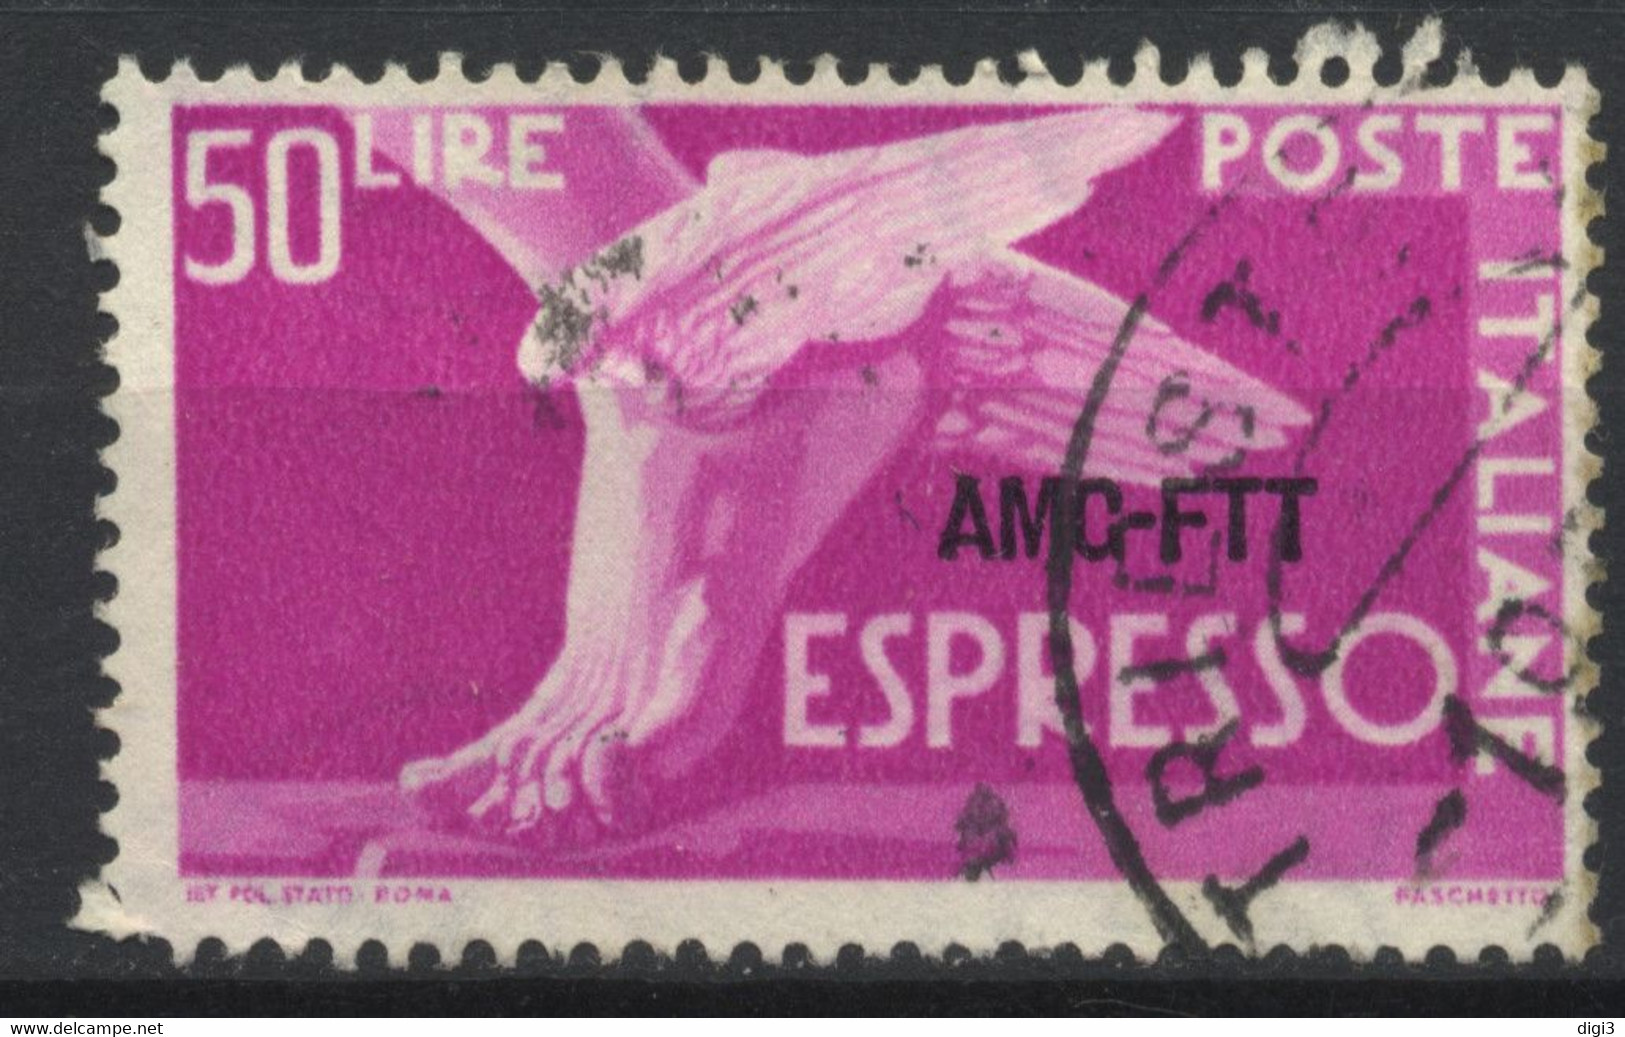 Trieste AMG-FTT, 1952, Democratica, Espresso, 50 L., Usato - Exprespost